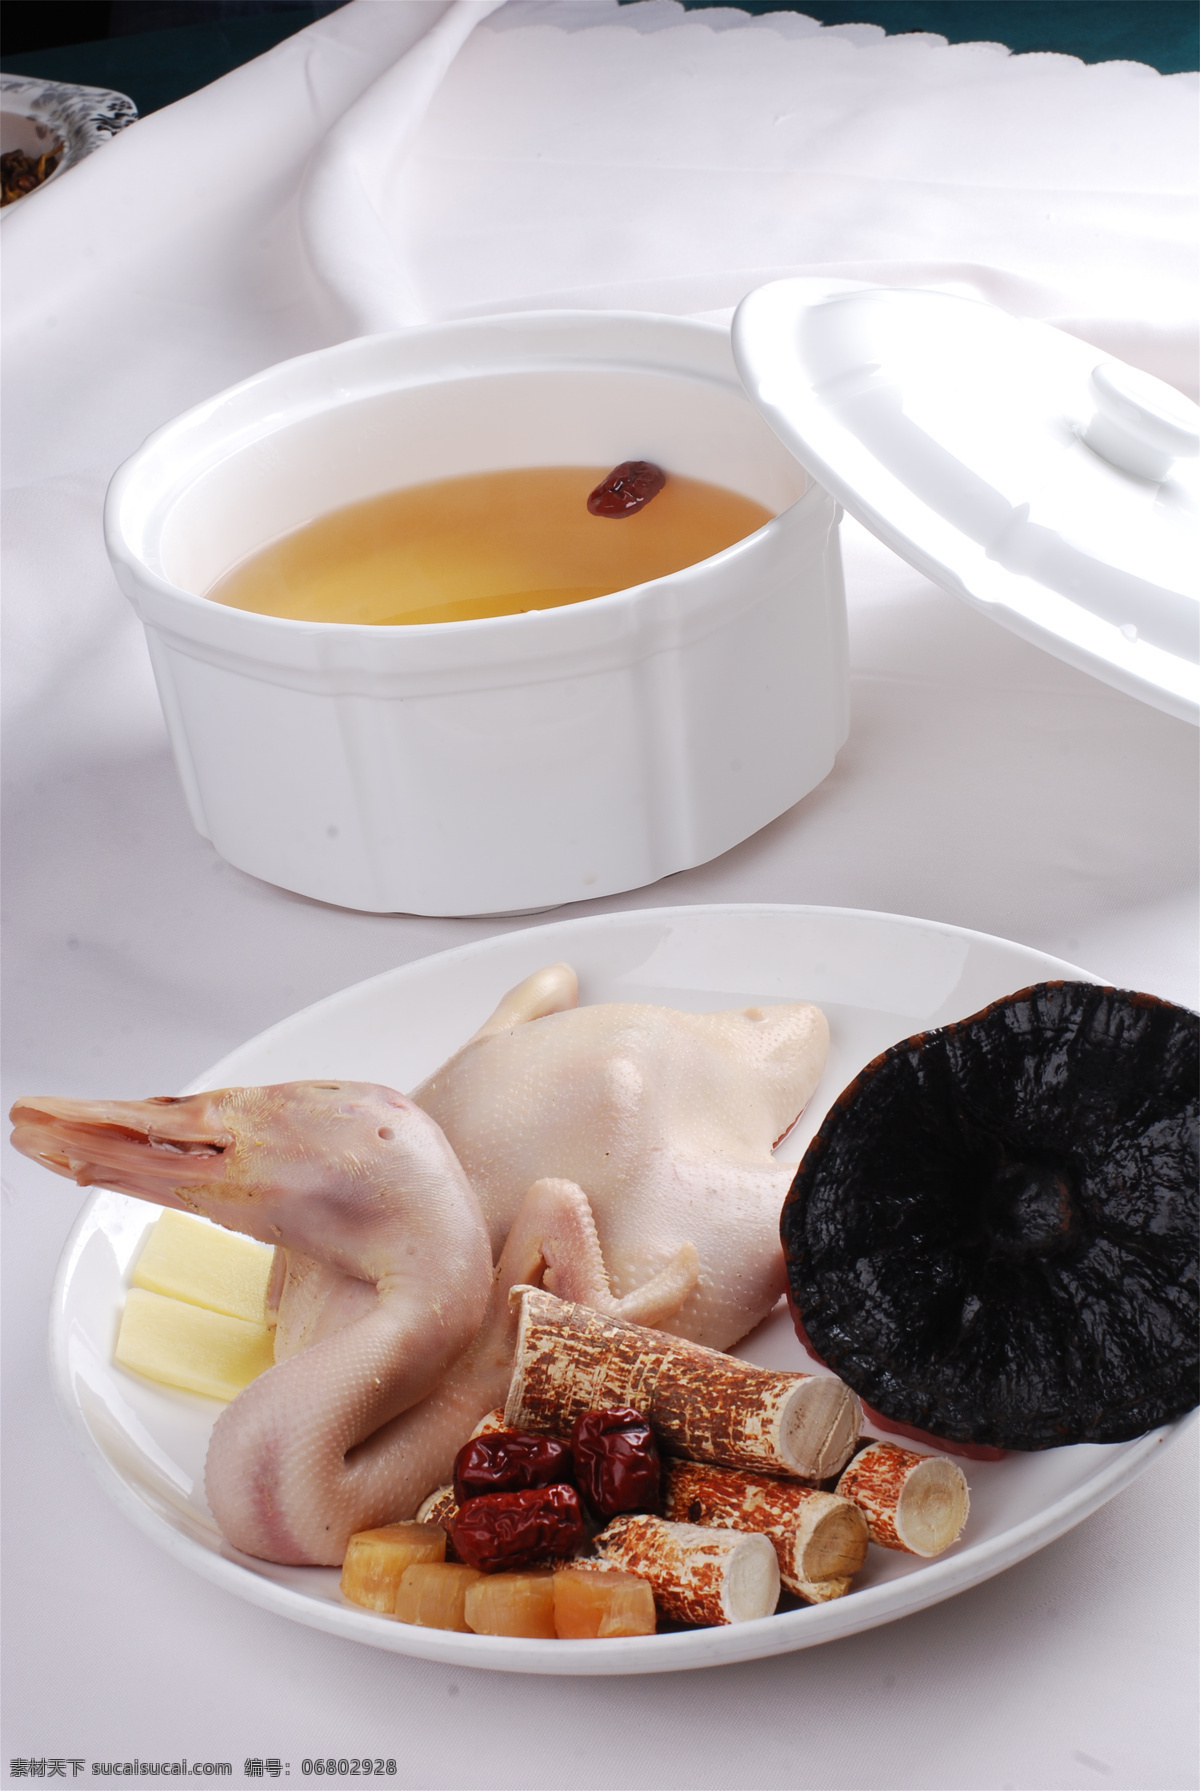 桃 灵芝 炖 水鸭 桃灵芝炖水鸭 美食 传统美食 餐饮美食 高清菜谱用图